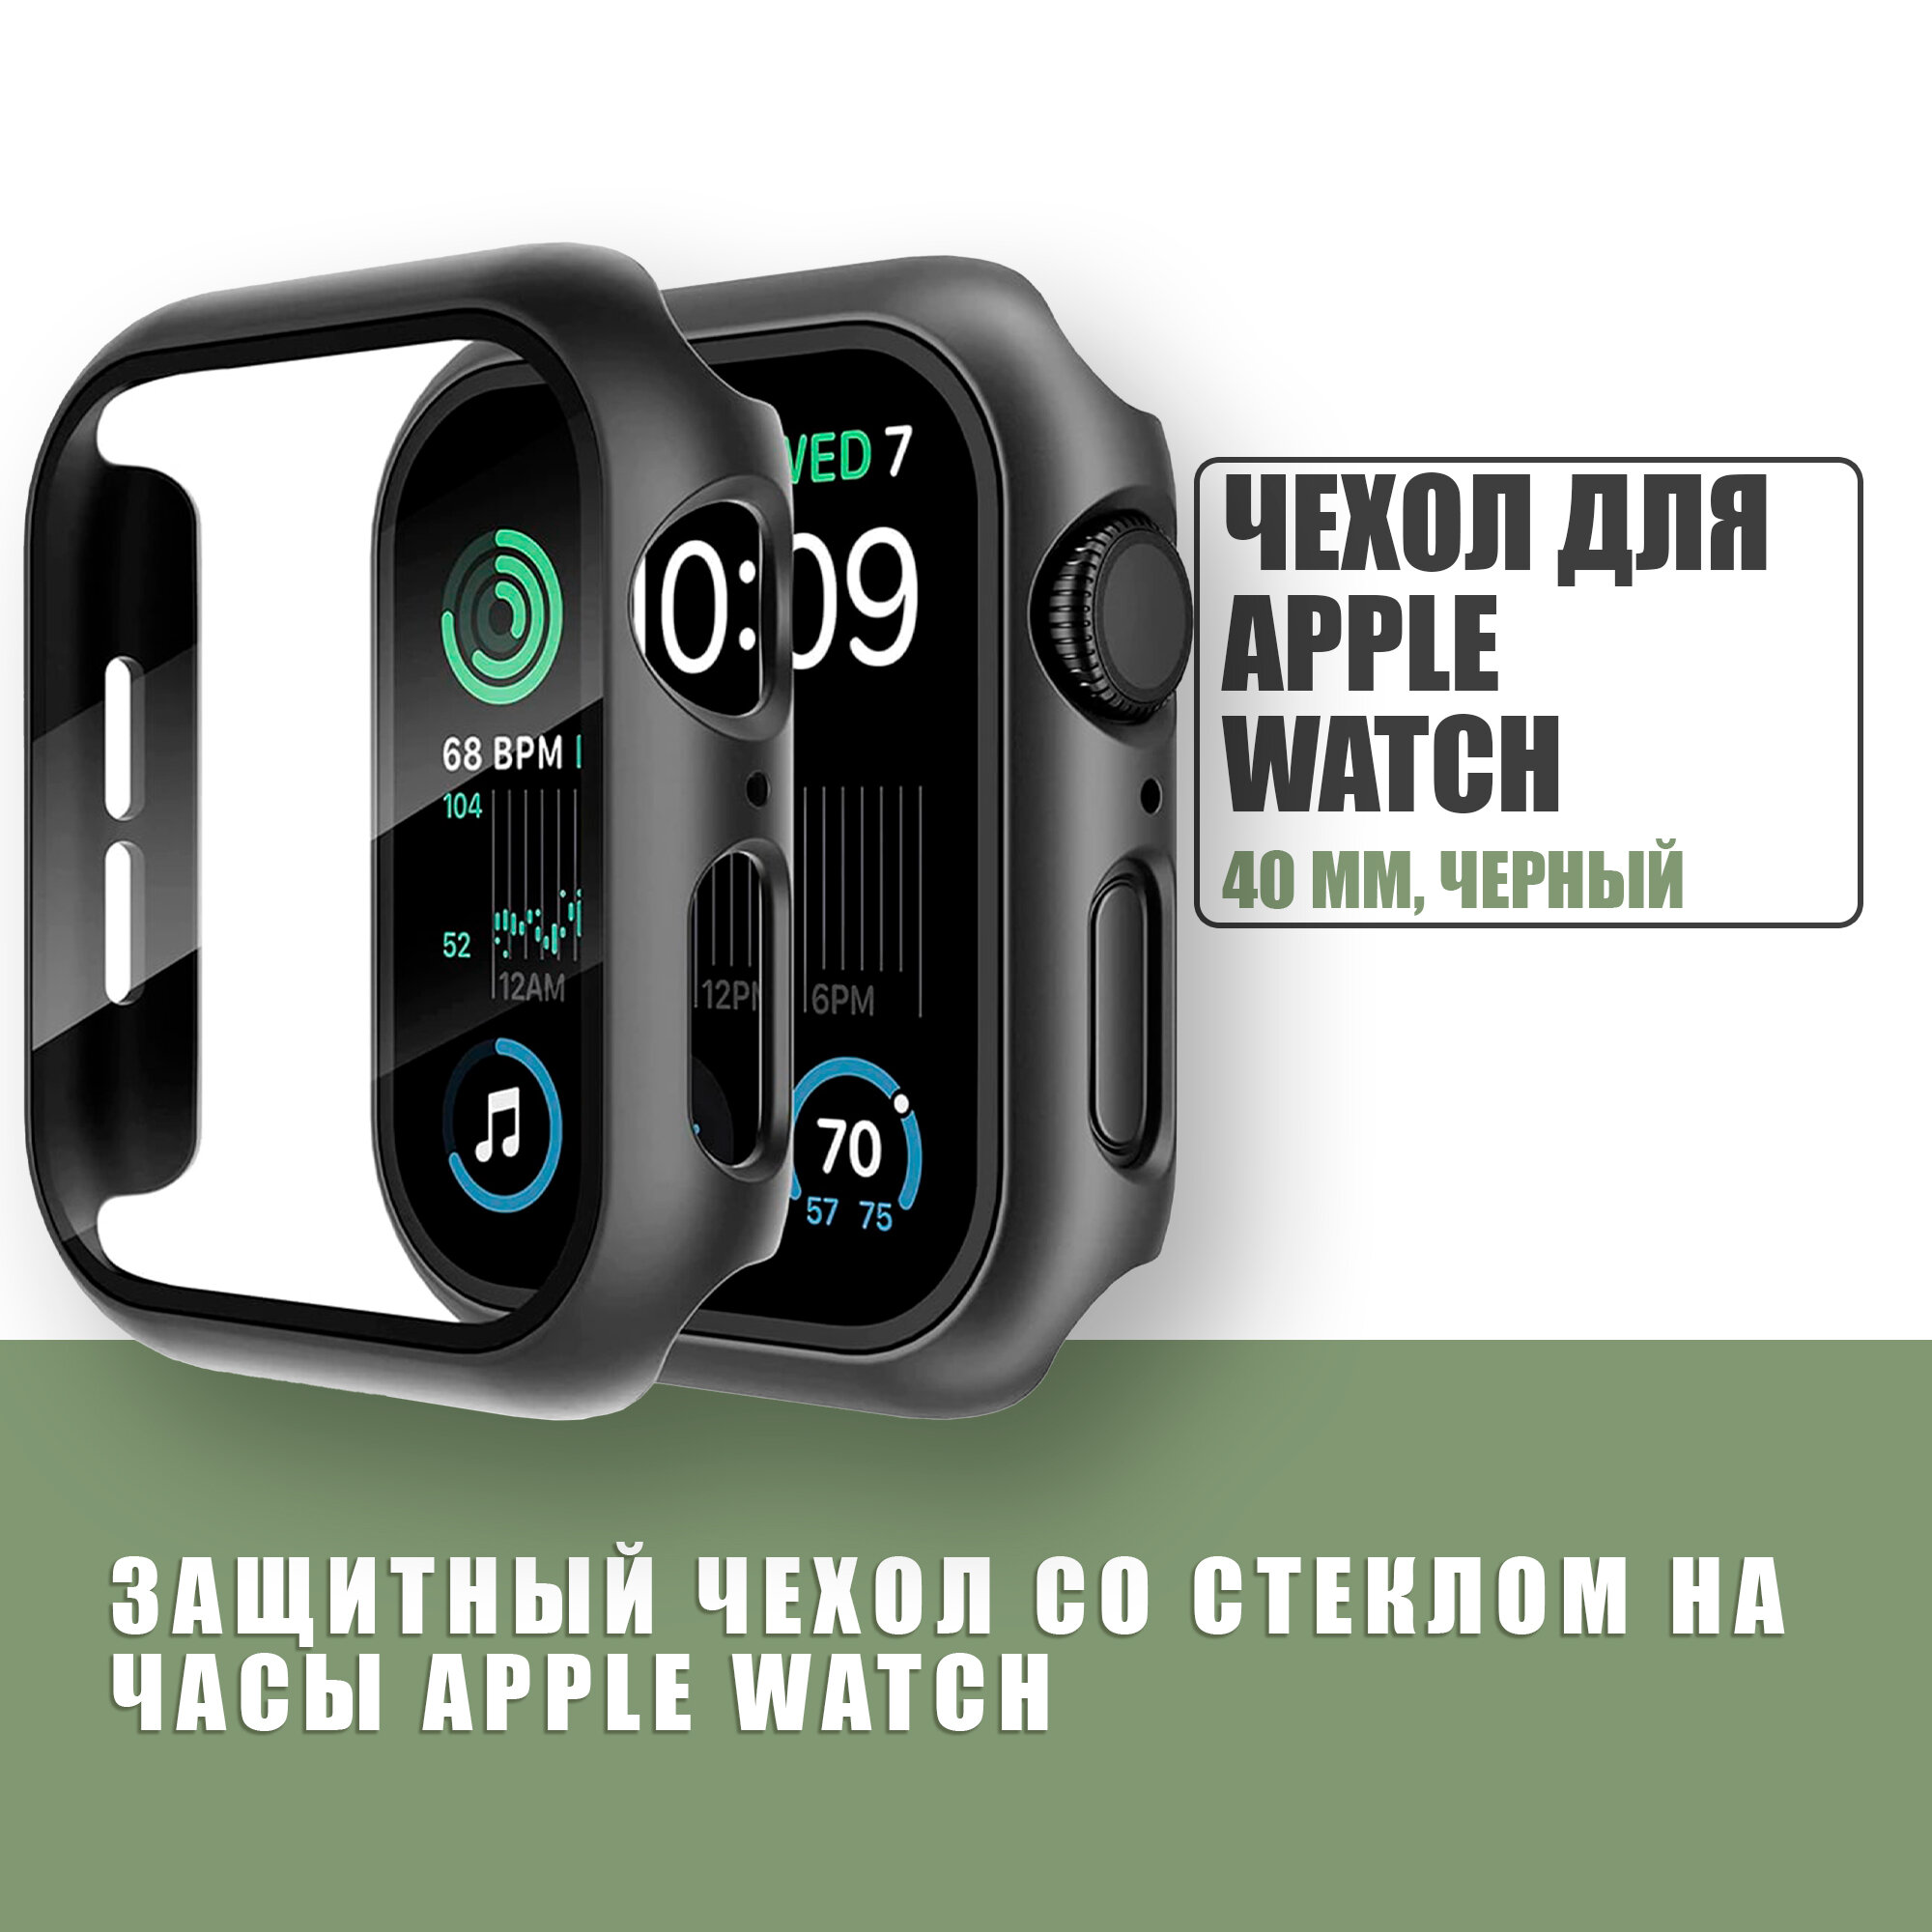 Защитный чехол стекло на часы Apple Watch 40 mm / Стекло на Апл Вотч 4, 5, 6, SE, Черный